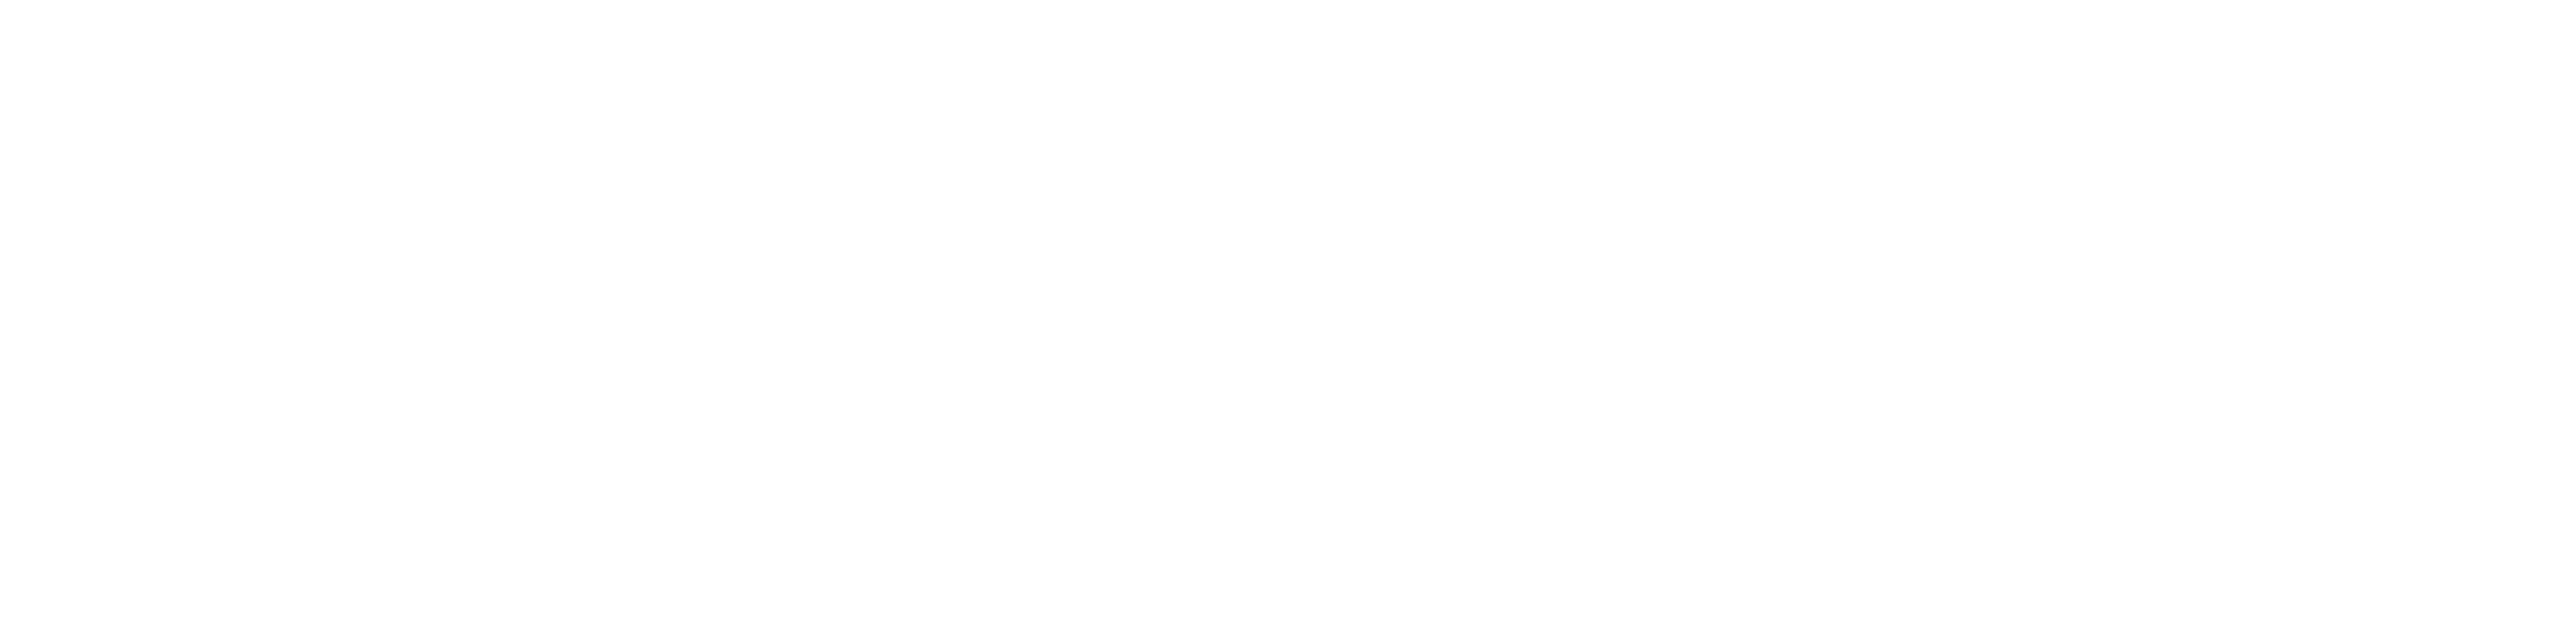 Courier Newsroom Logo